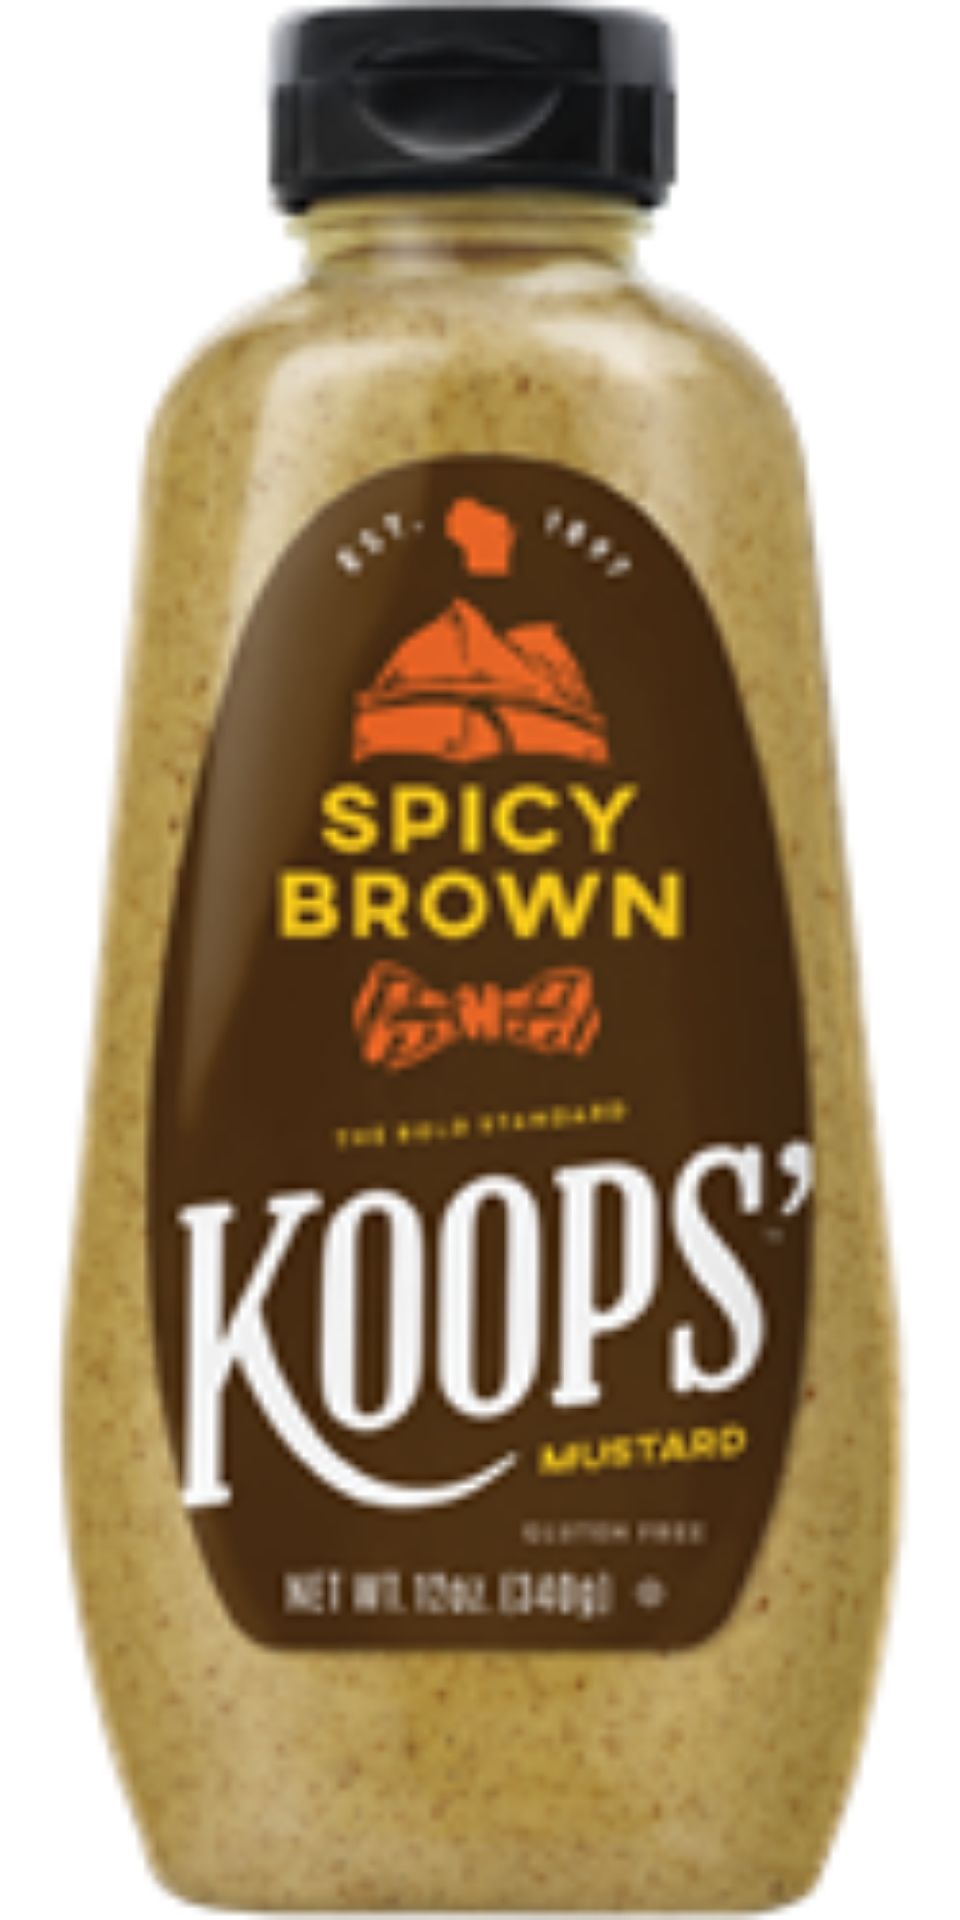 koops' spicy brown mustard